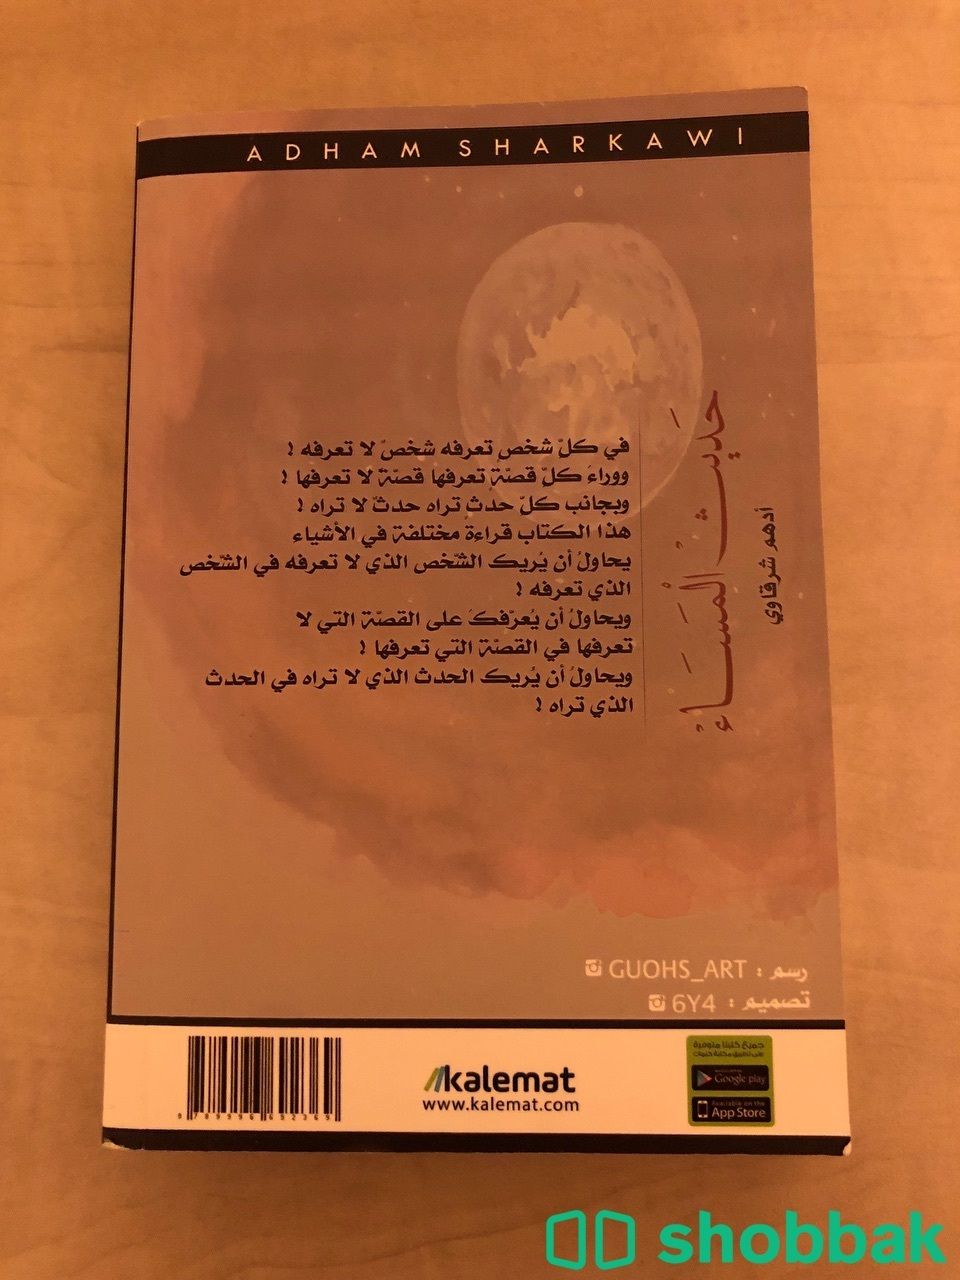 كتاب حديث المساء Shobbak Saudi Arabia